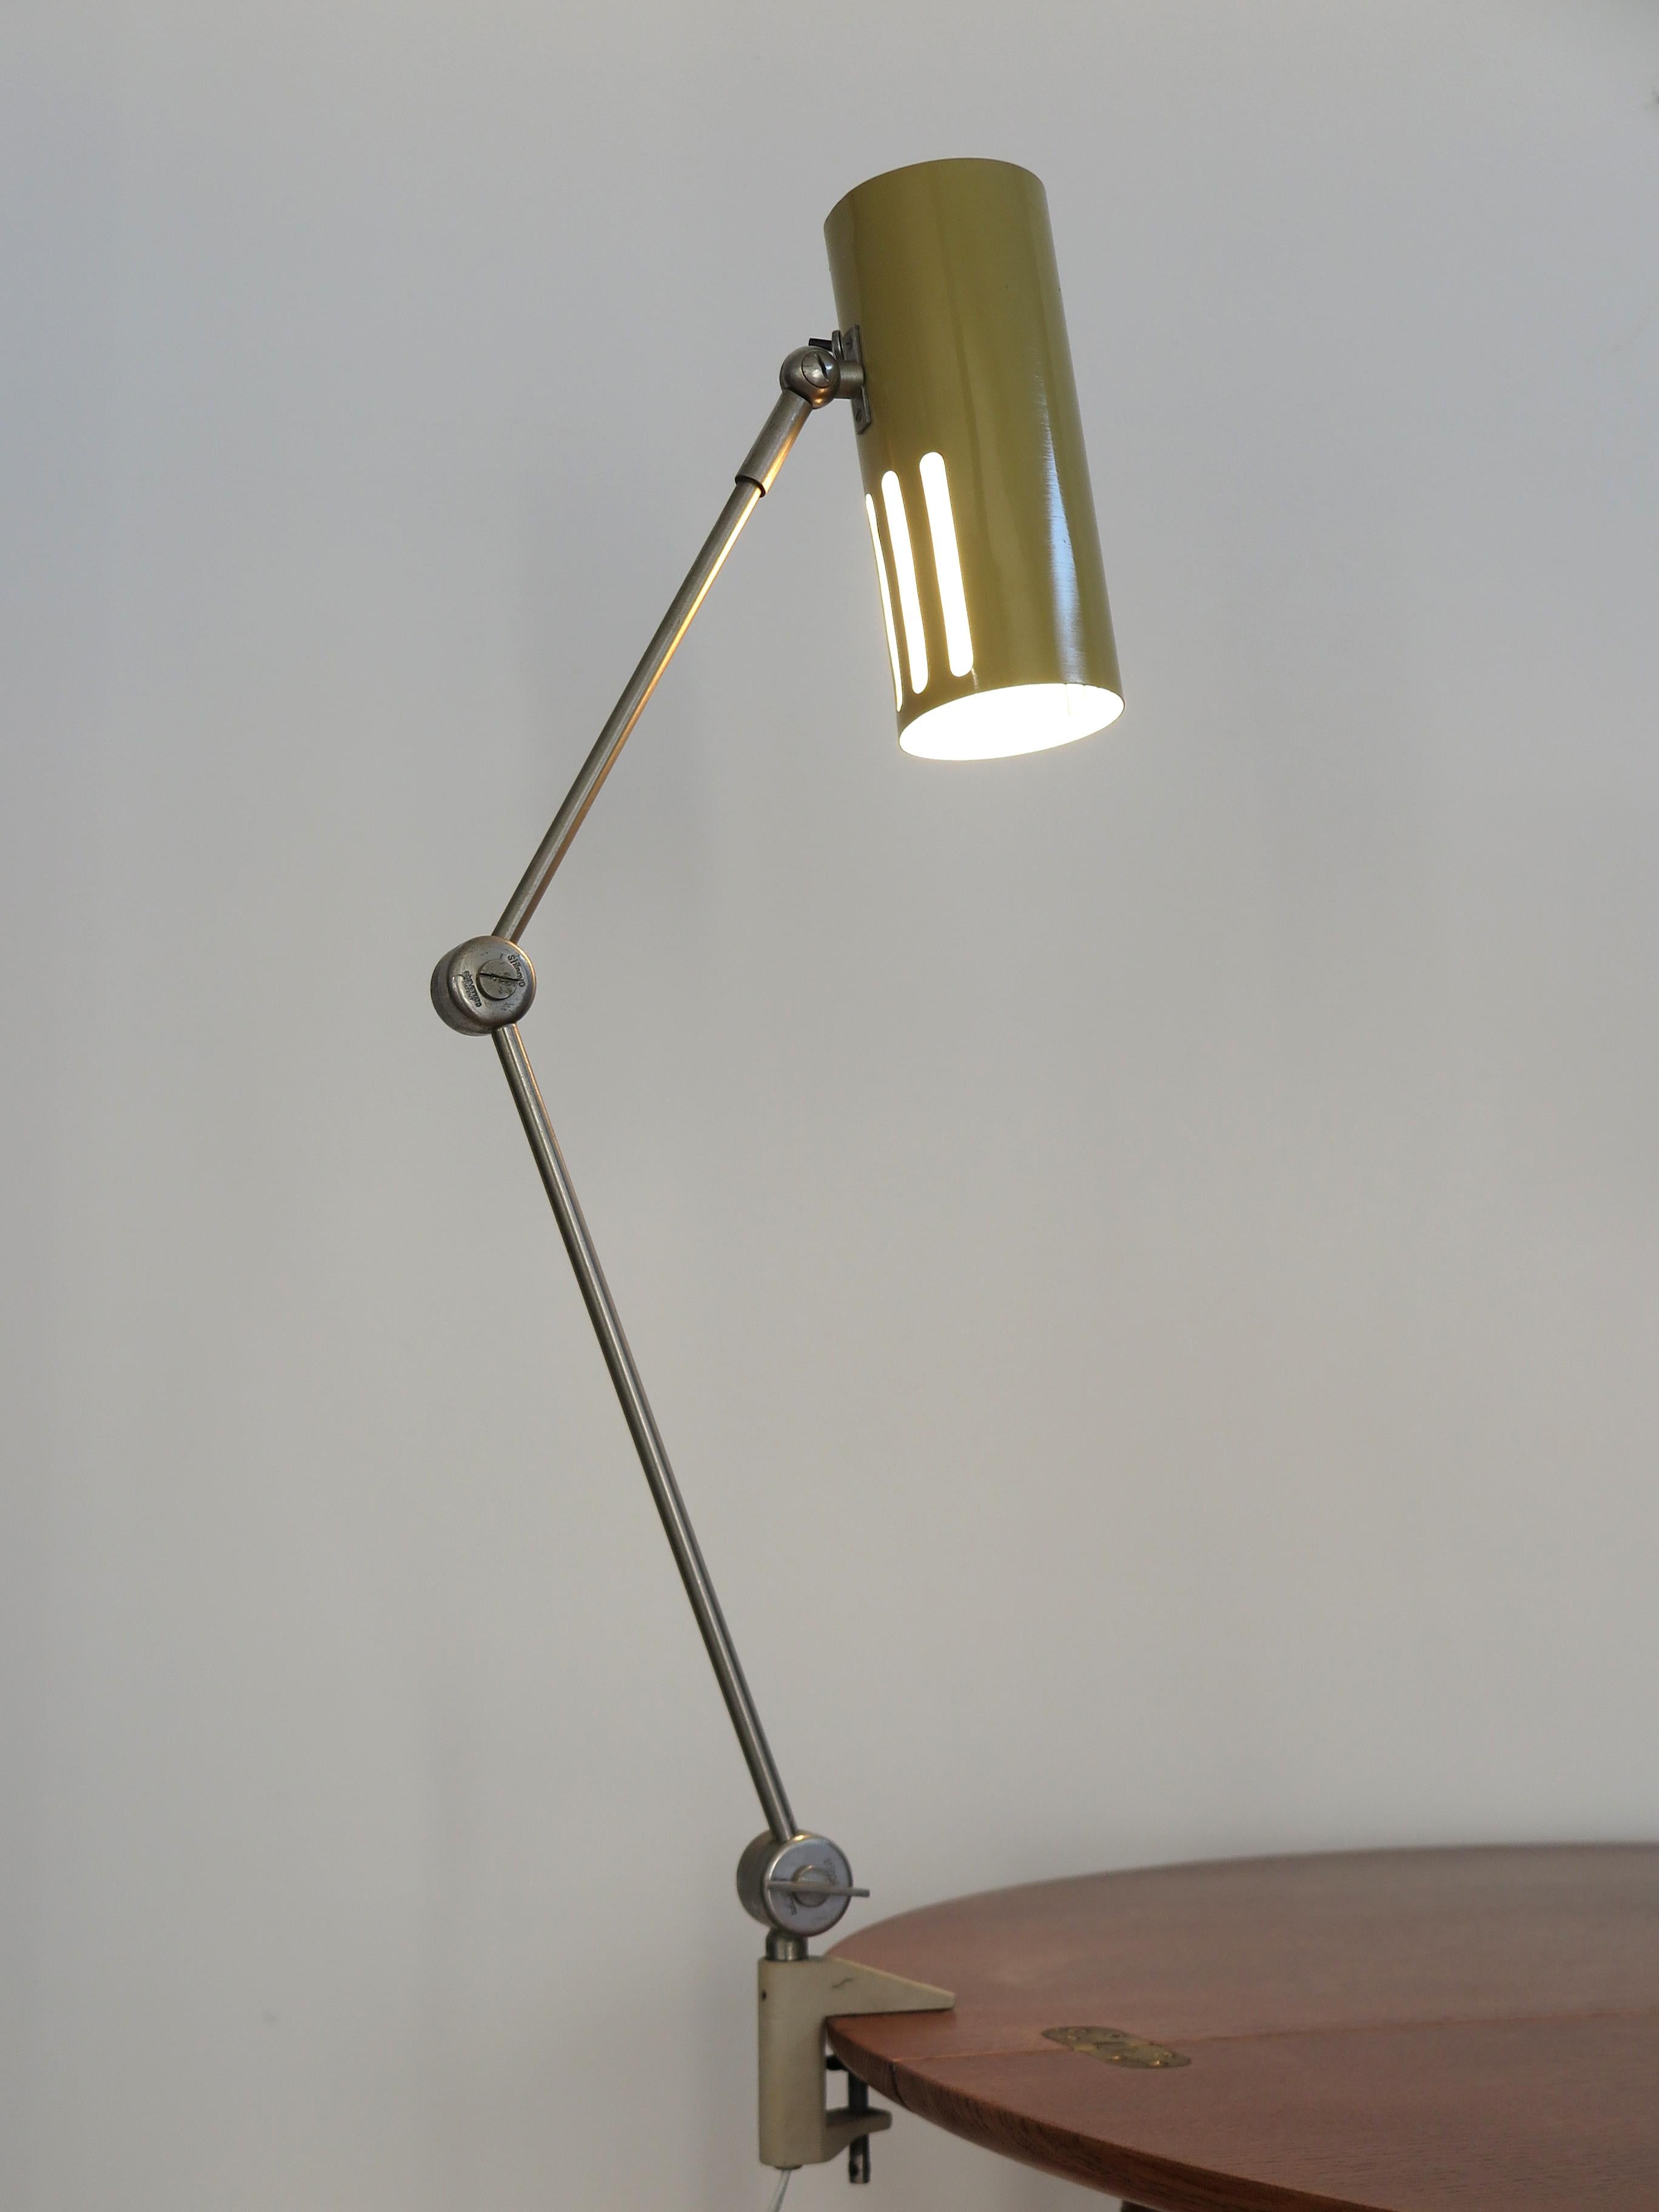 Italian Stilnovo Midcentury Modern Metal Clamp Table Lamp 1950s For Sale 1